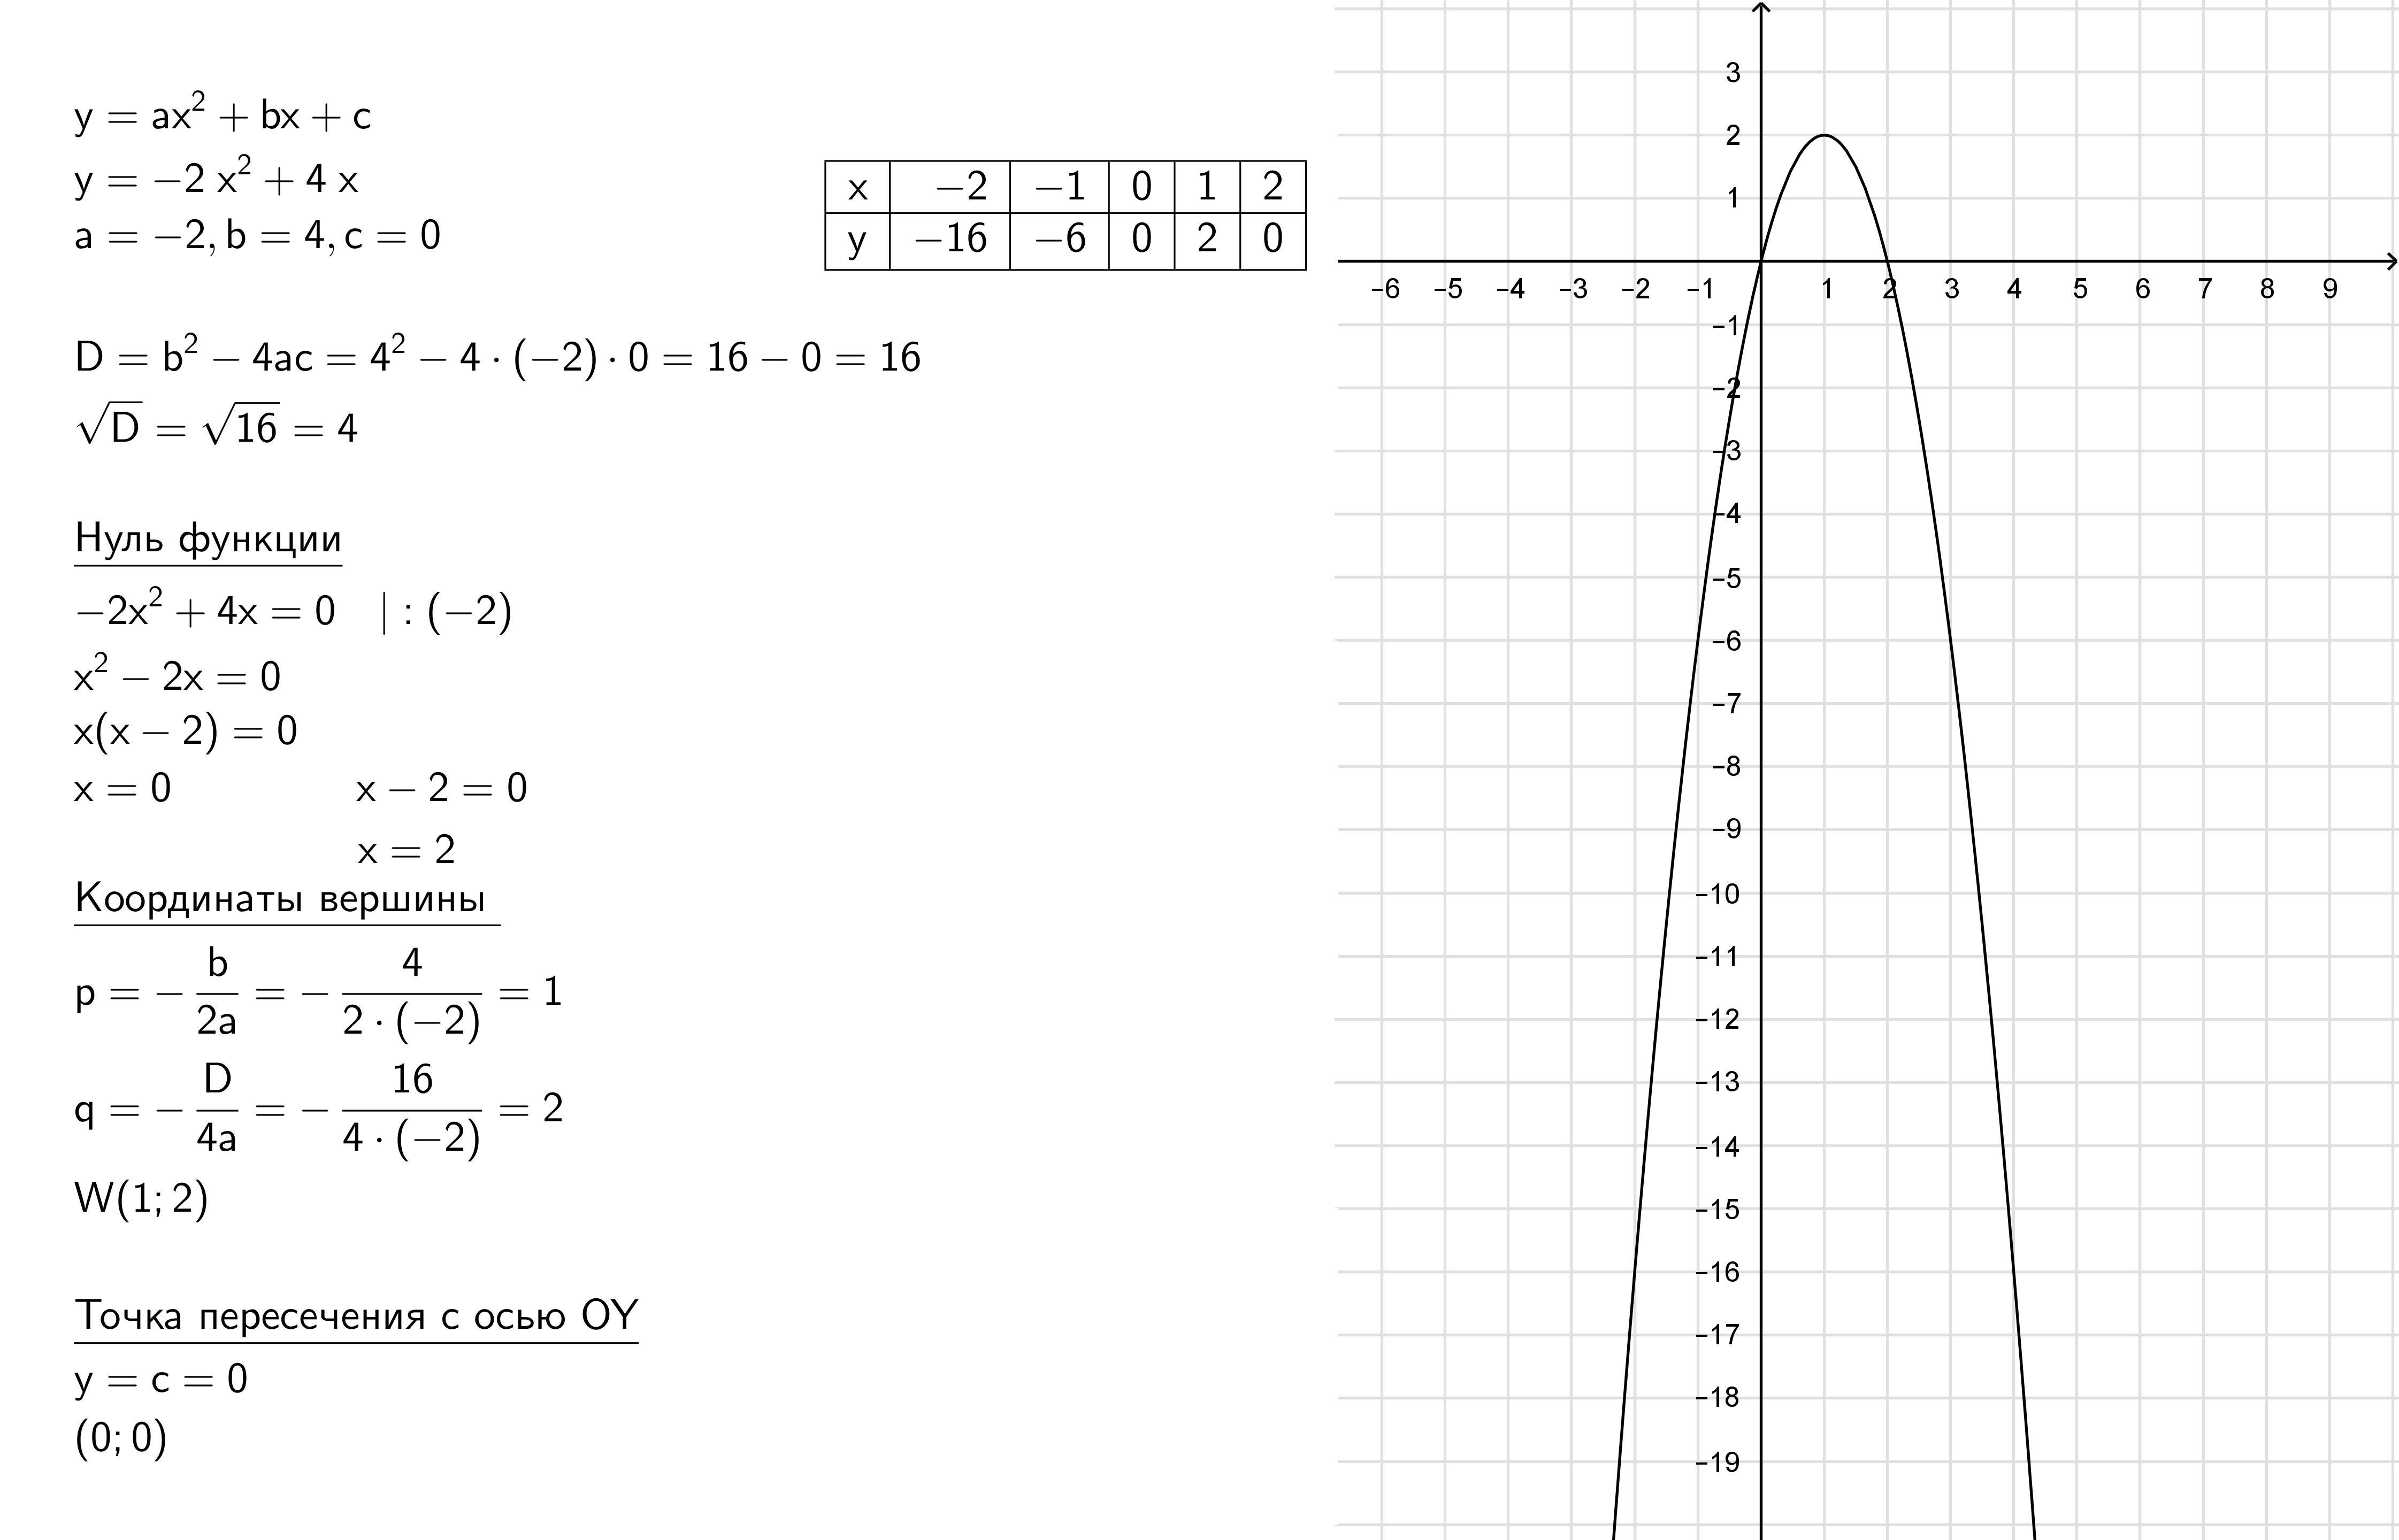 Y 3 5x 6 с осью ox. Y 2x2 6x 2 график функции. Y=X^2-6x+8 функция. Y 2x 2 график функции ( y= x^2). Функция y 6/x.